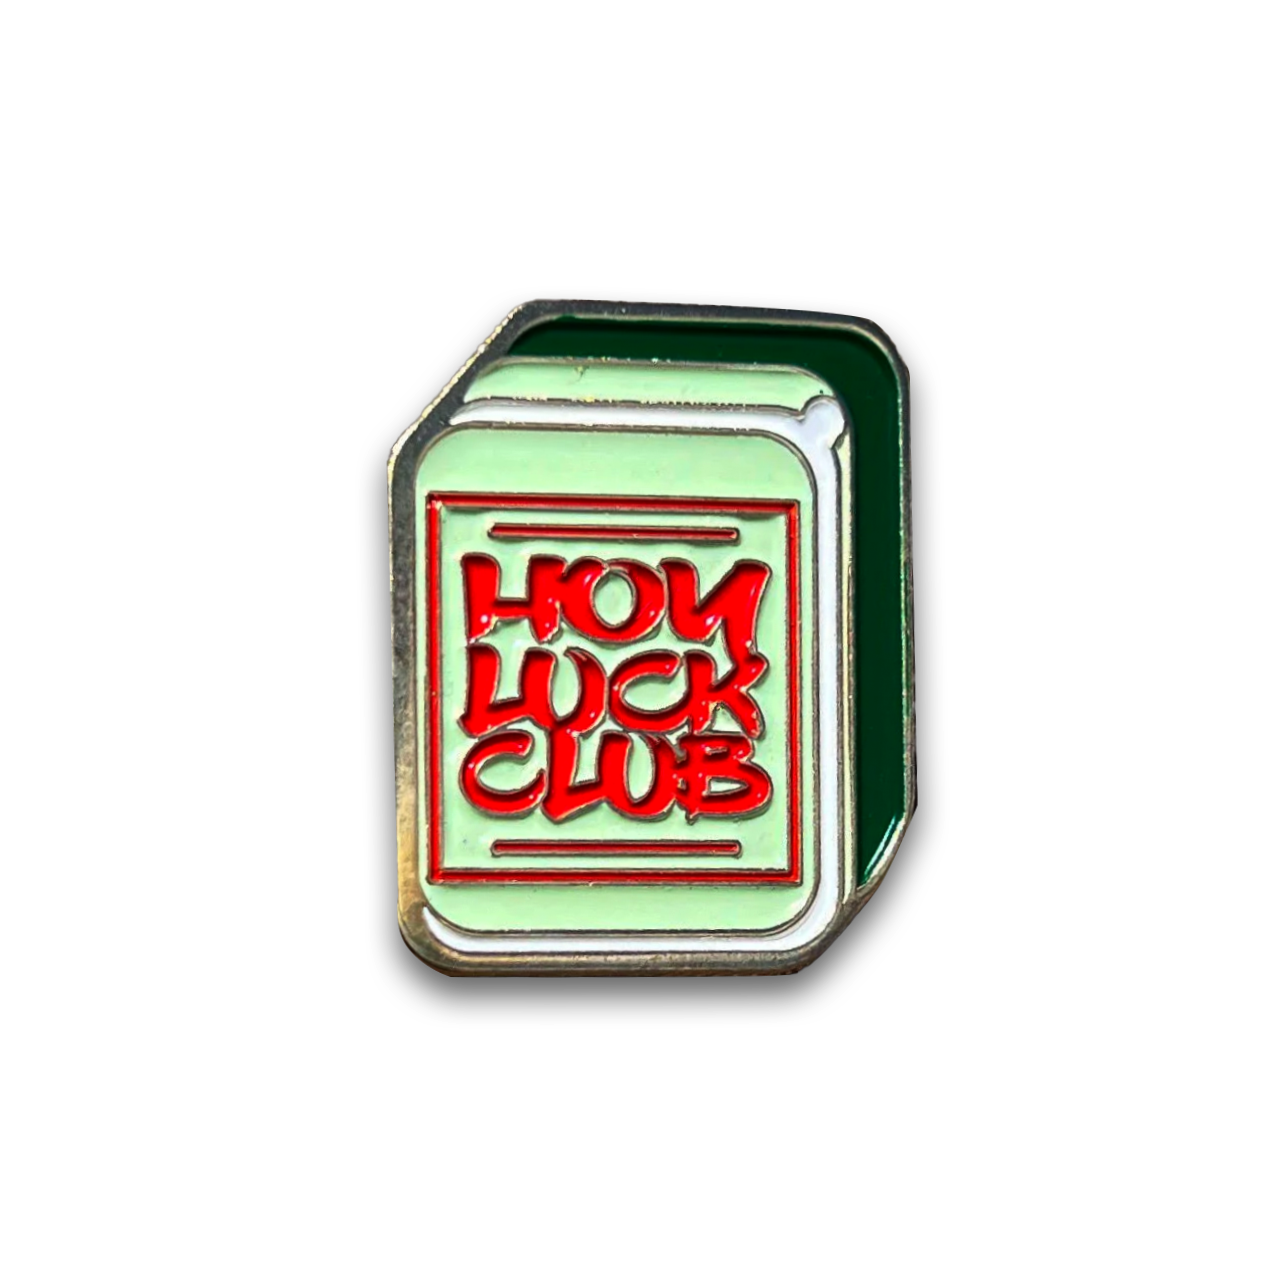 Hoy Luck Club Pin